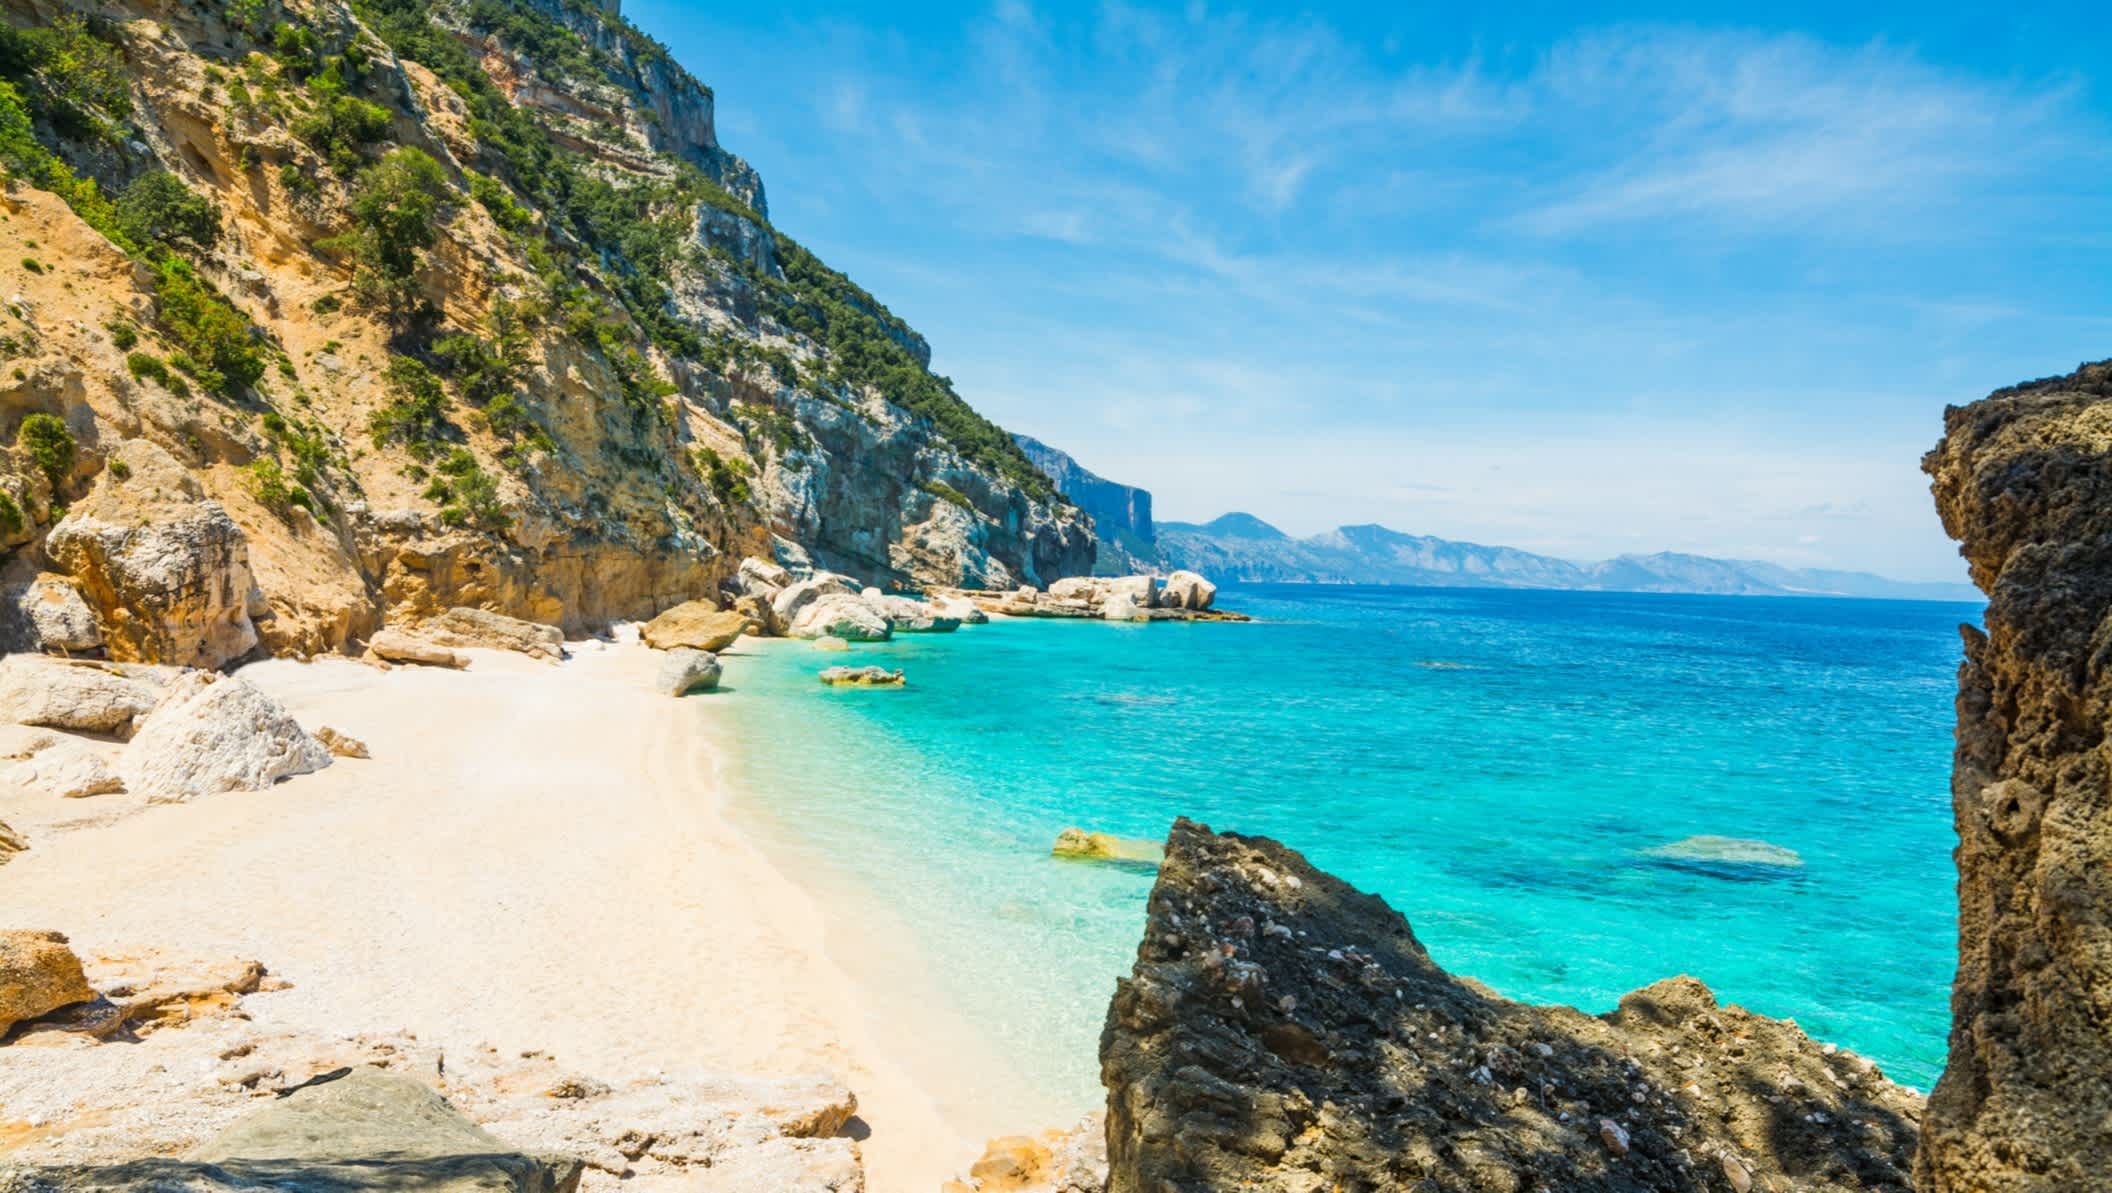 Crique de sable blanc bordée par des rochers verdoyants et une mer turquoise, à Cala Mariolu, en Sardaigne, en Italie.

